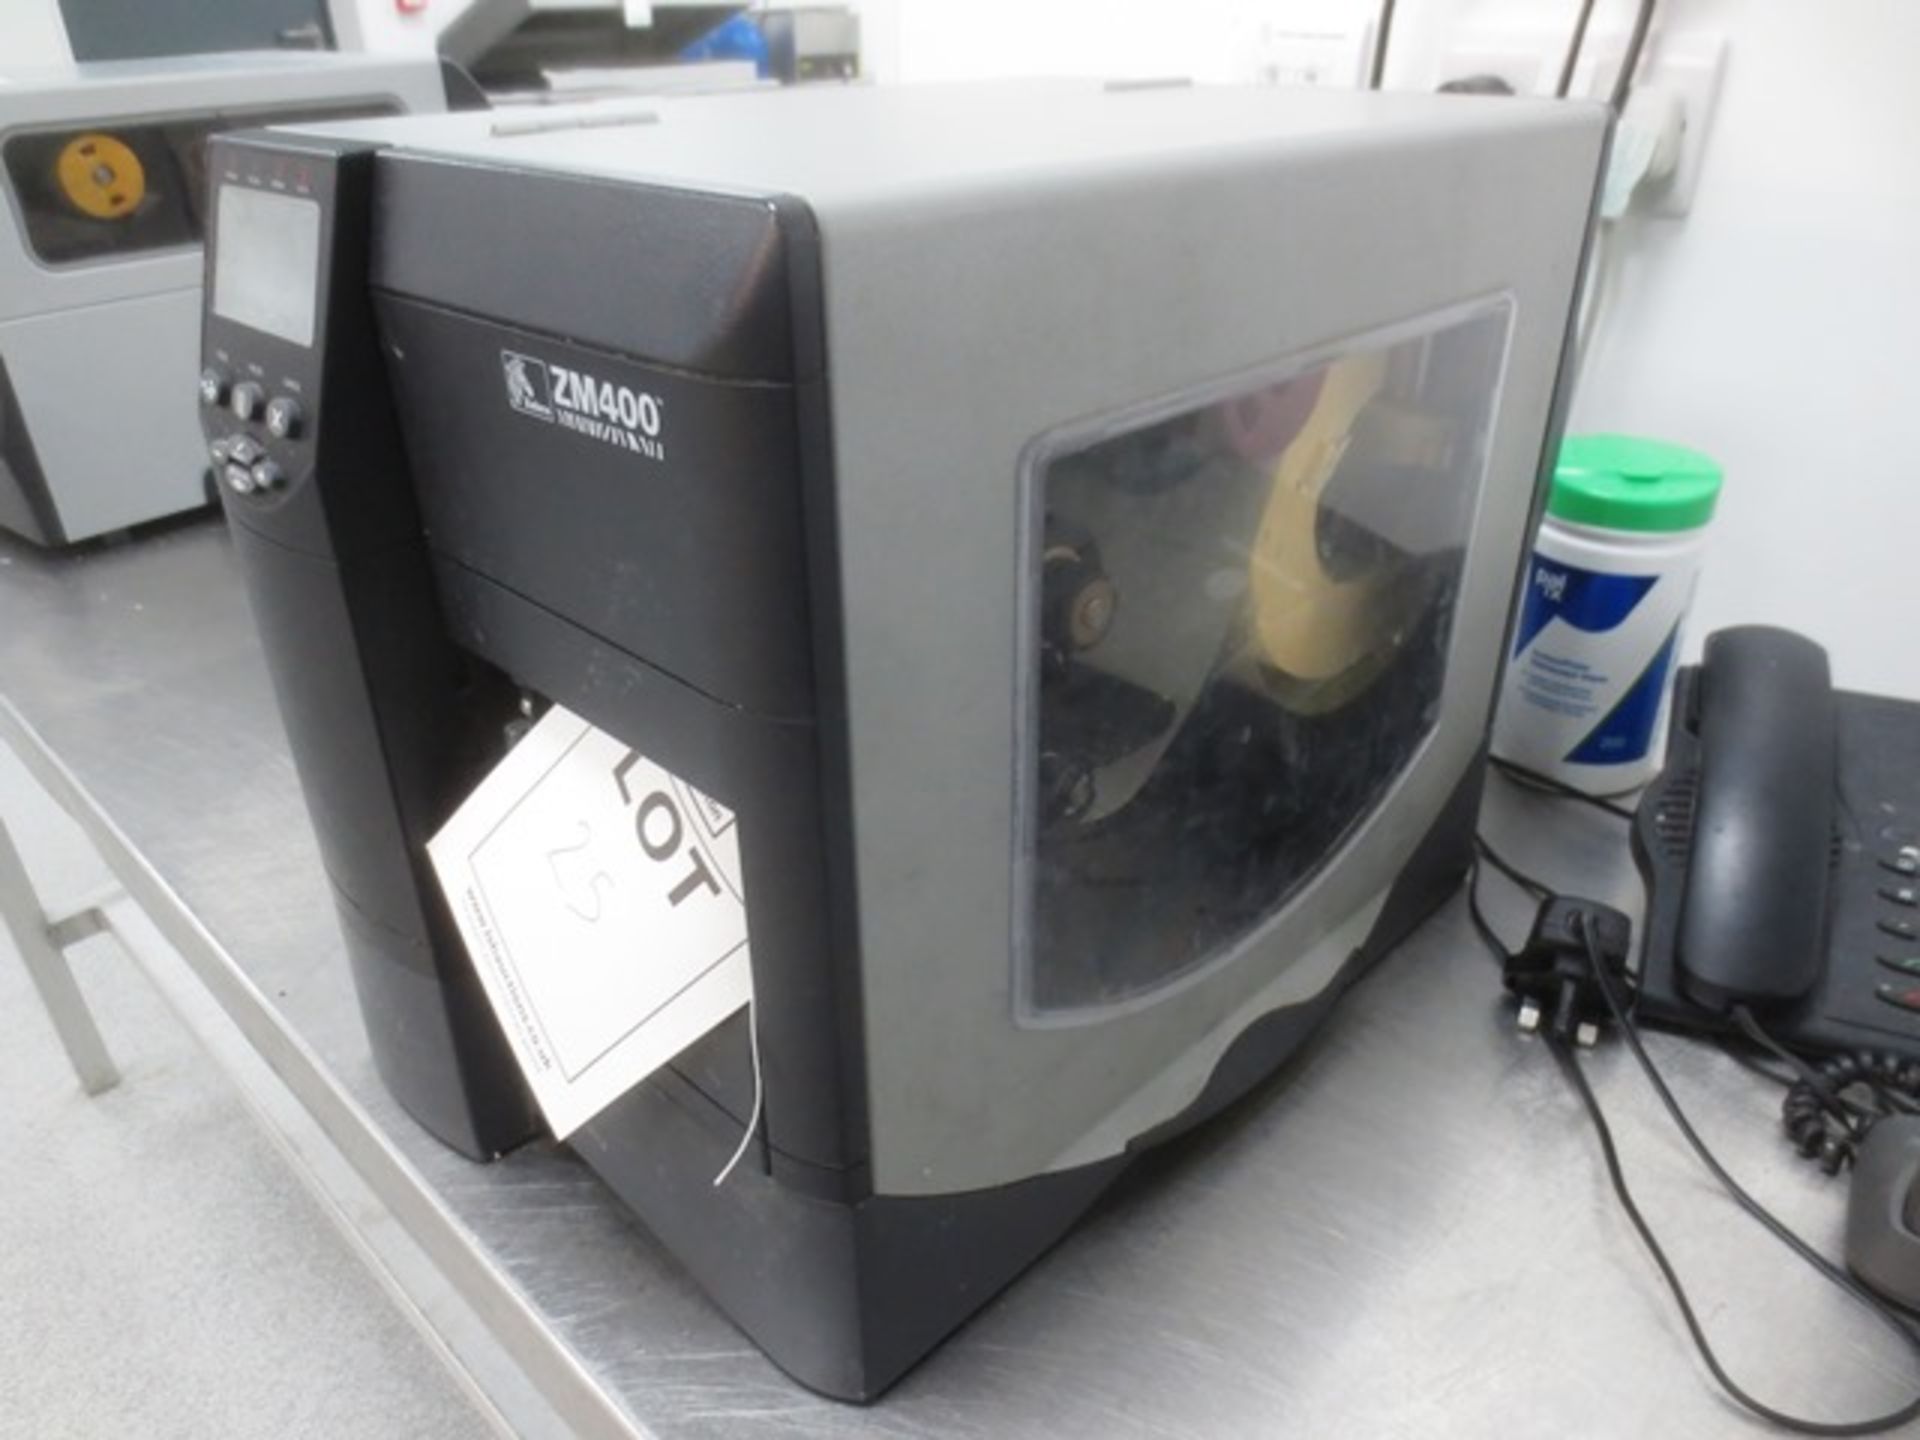 Zebra ZM400 bench top label printer, serial no: 08J122400166